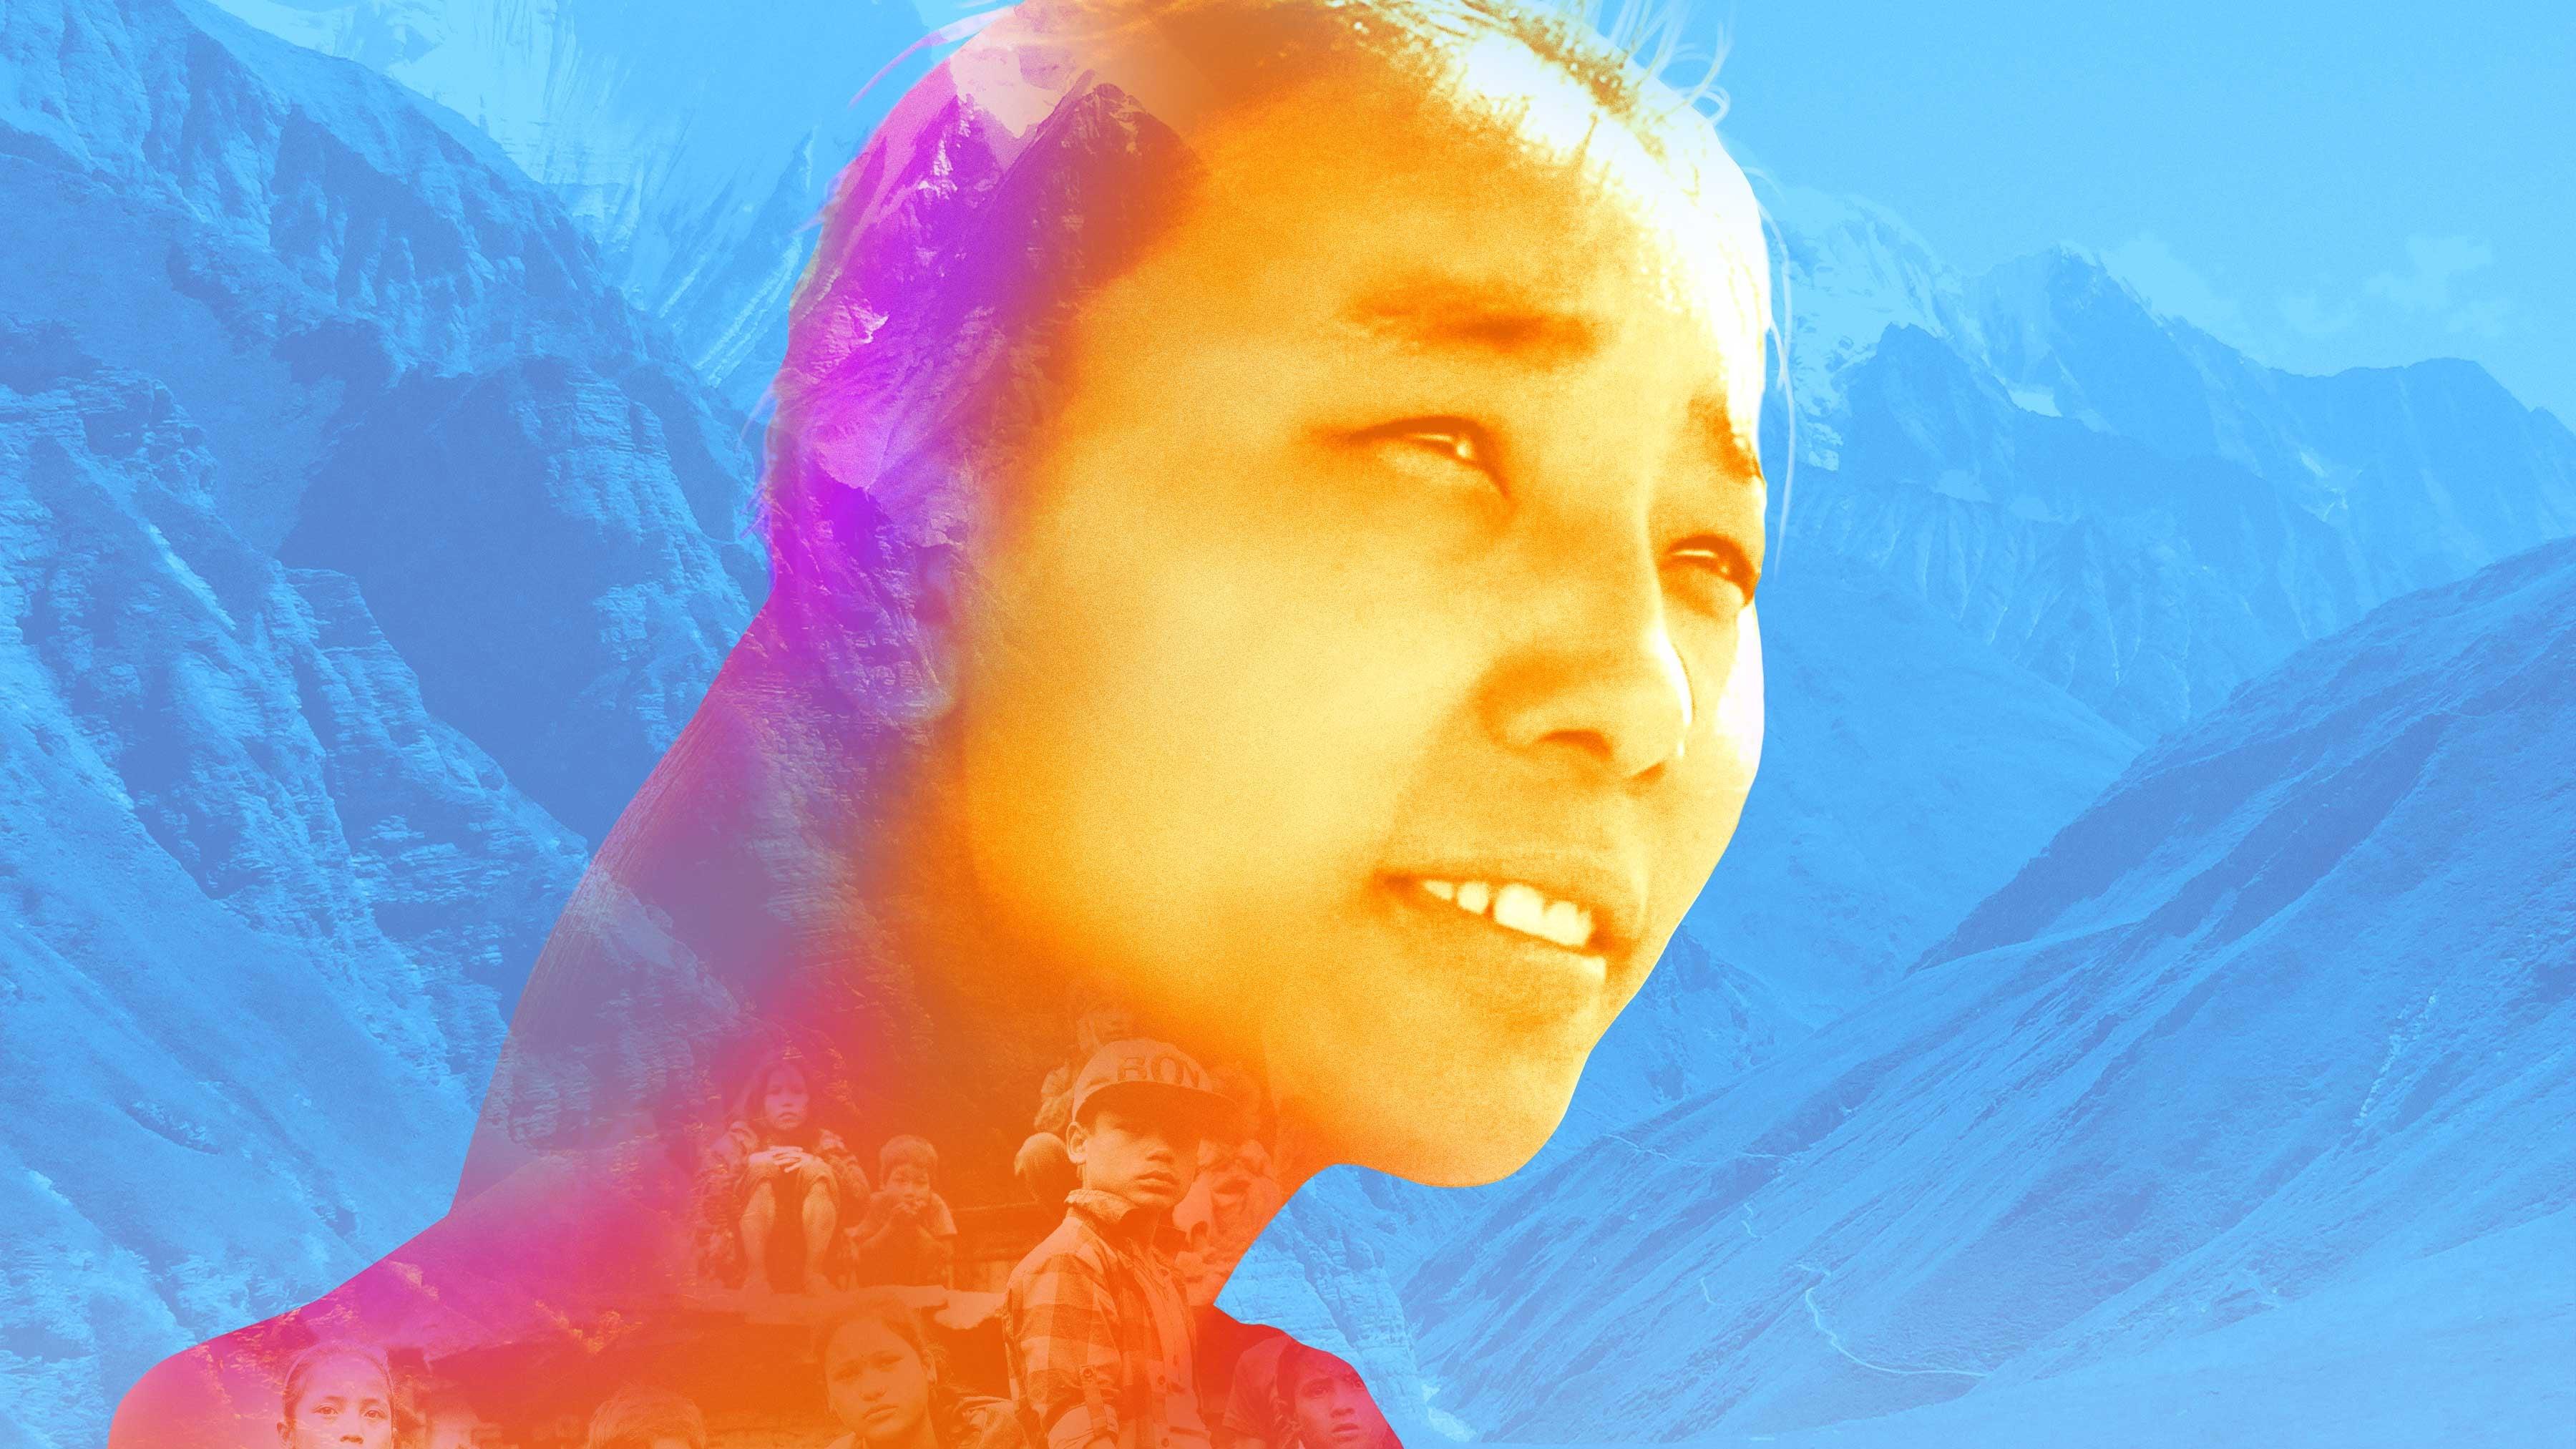 Sangpo Lama backdrop